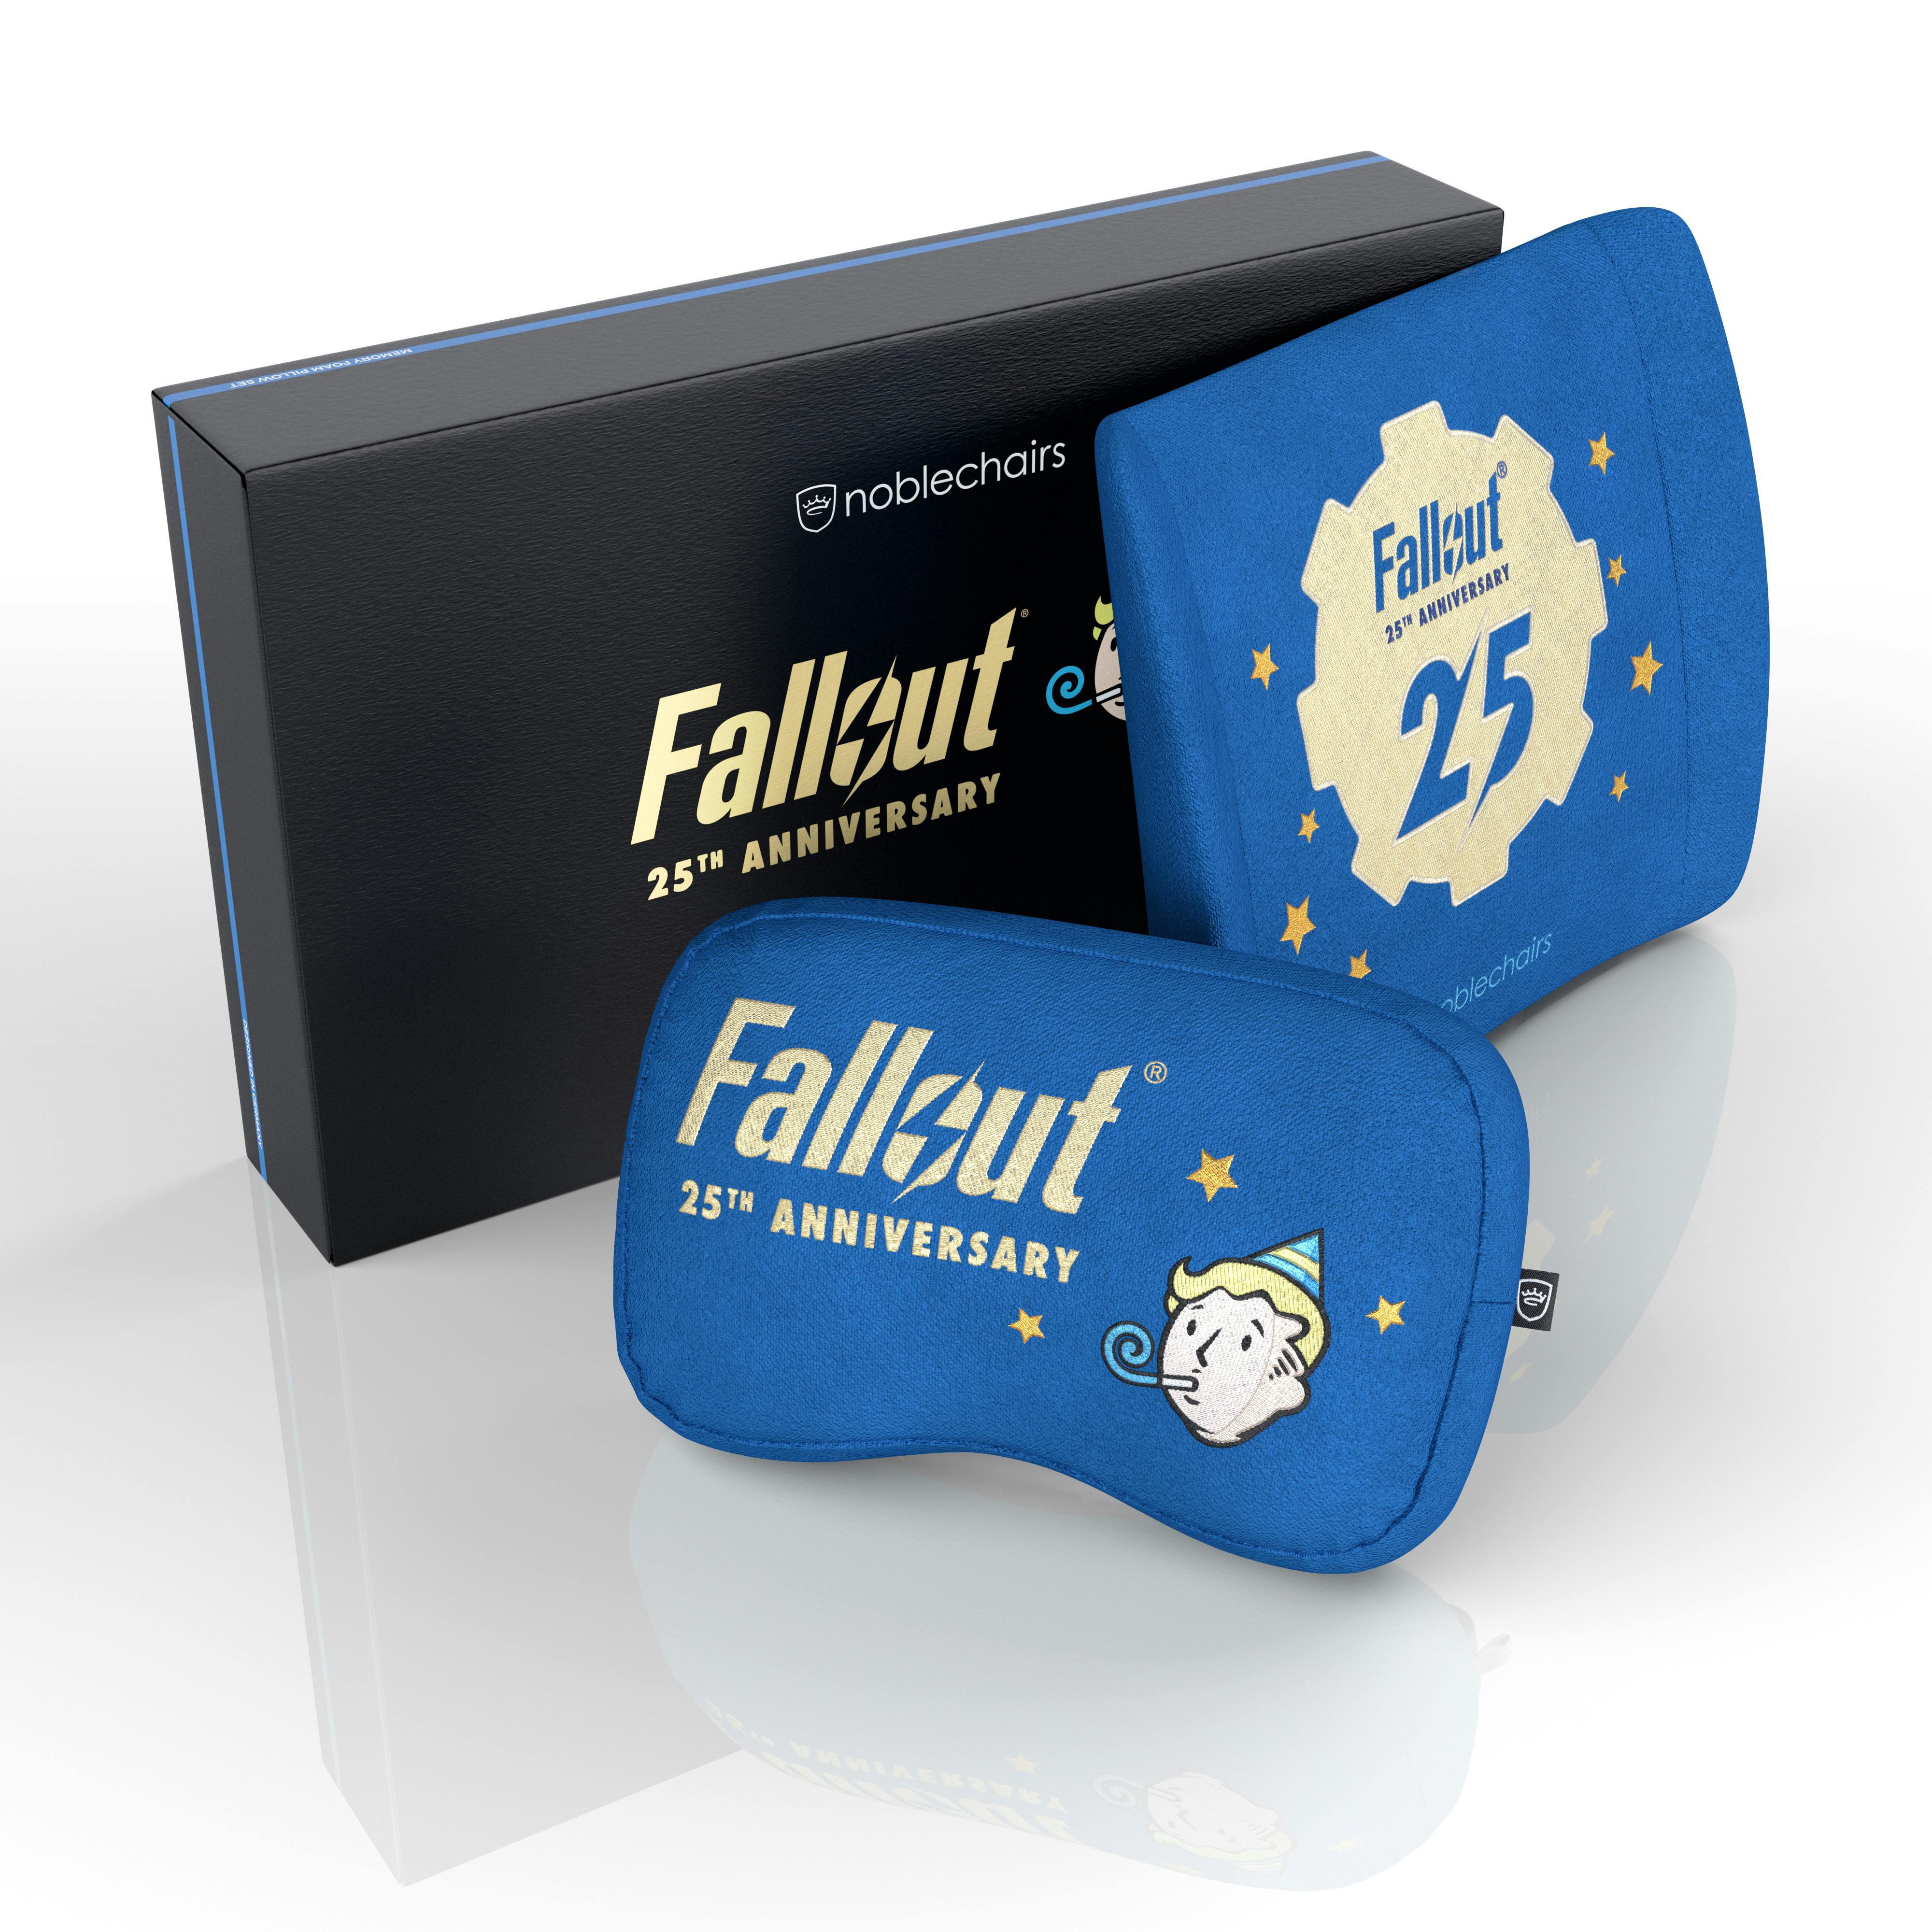 Conjunto de Almofadas Fallout 25th Anniversary Edition
